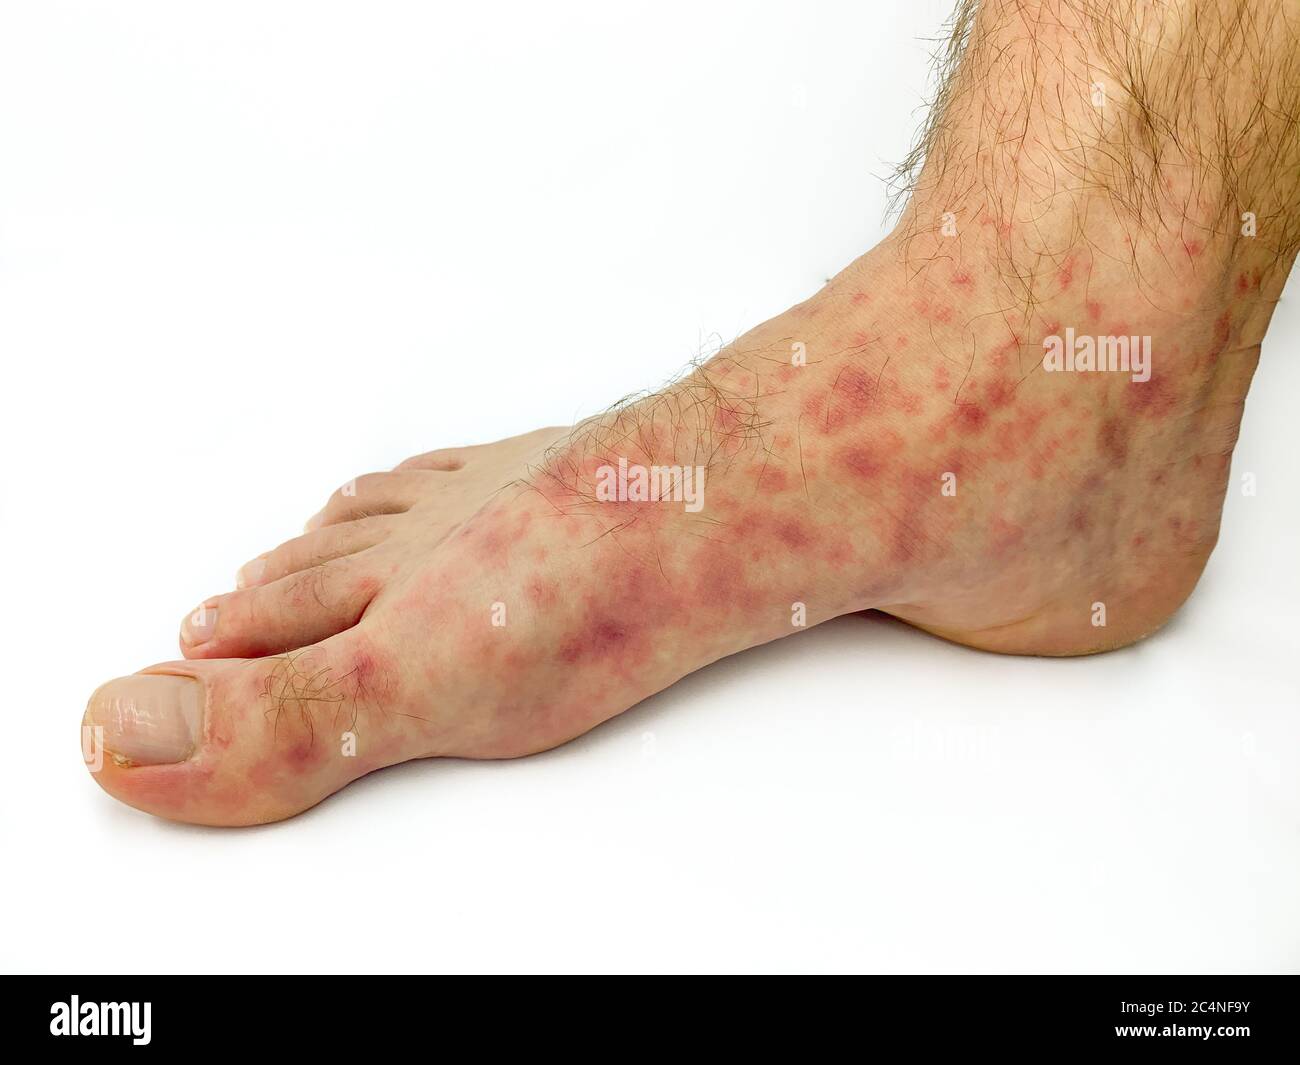 Nahaufnahme von männlichen Füßen und Zehen mit rotem Hautausschlag auf  weißem Hintergrund isoliert. Bild auf Lager Stockfotografie - Alamy